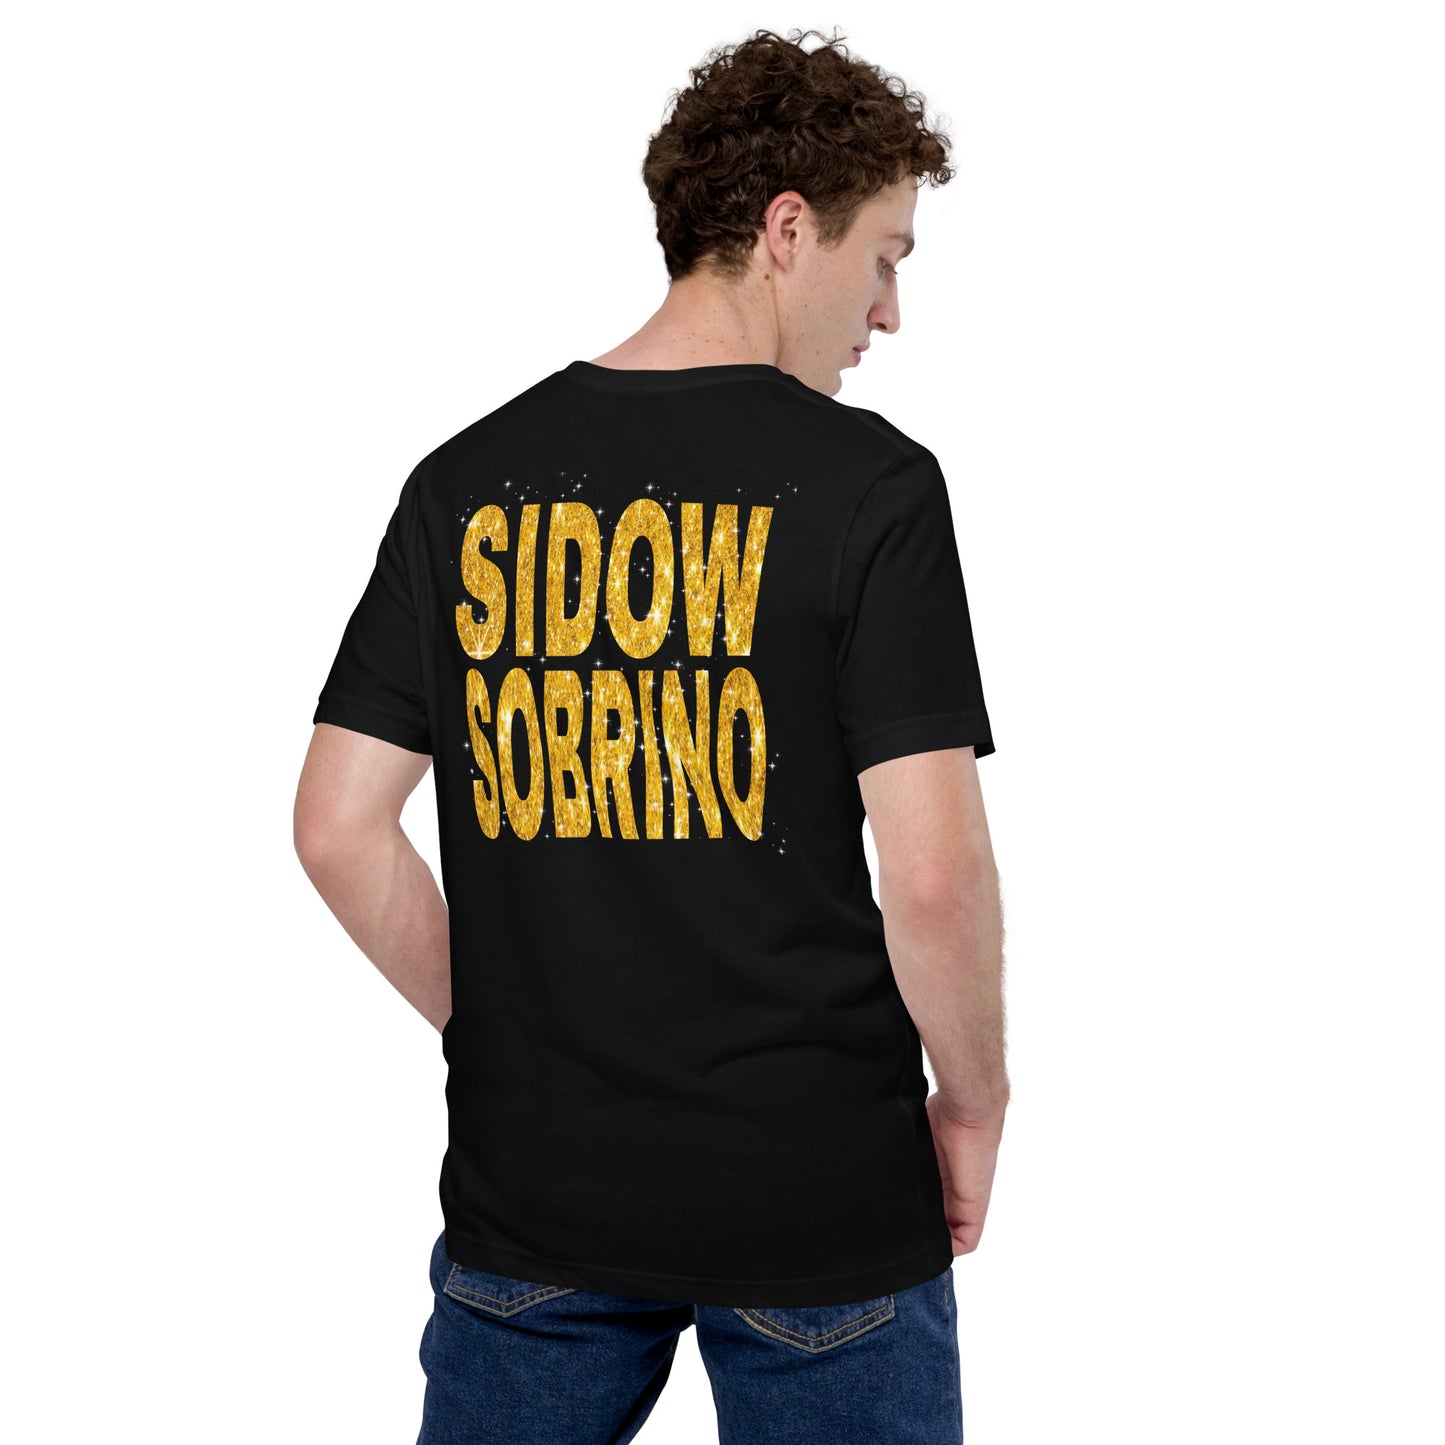 Camiseta unisex Sidow Sobrino